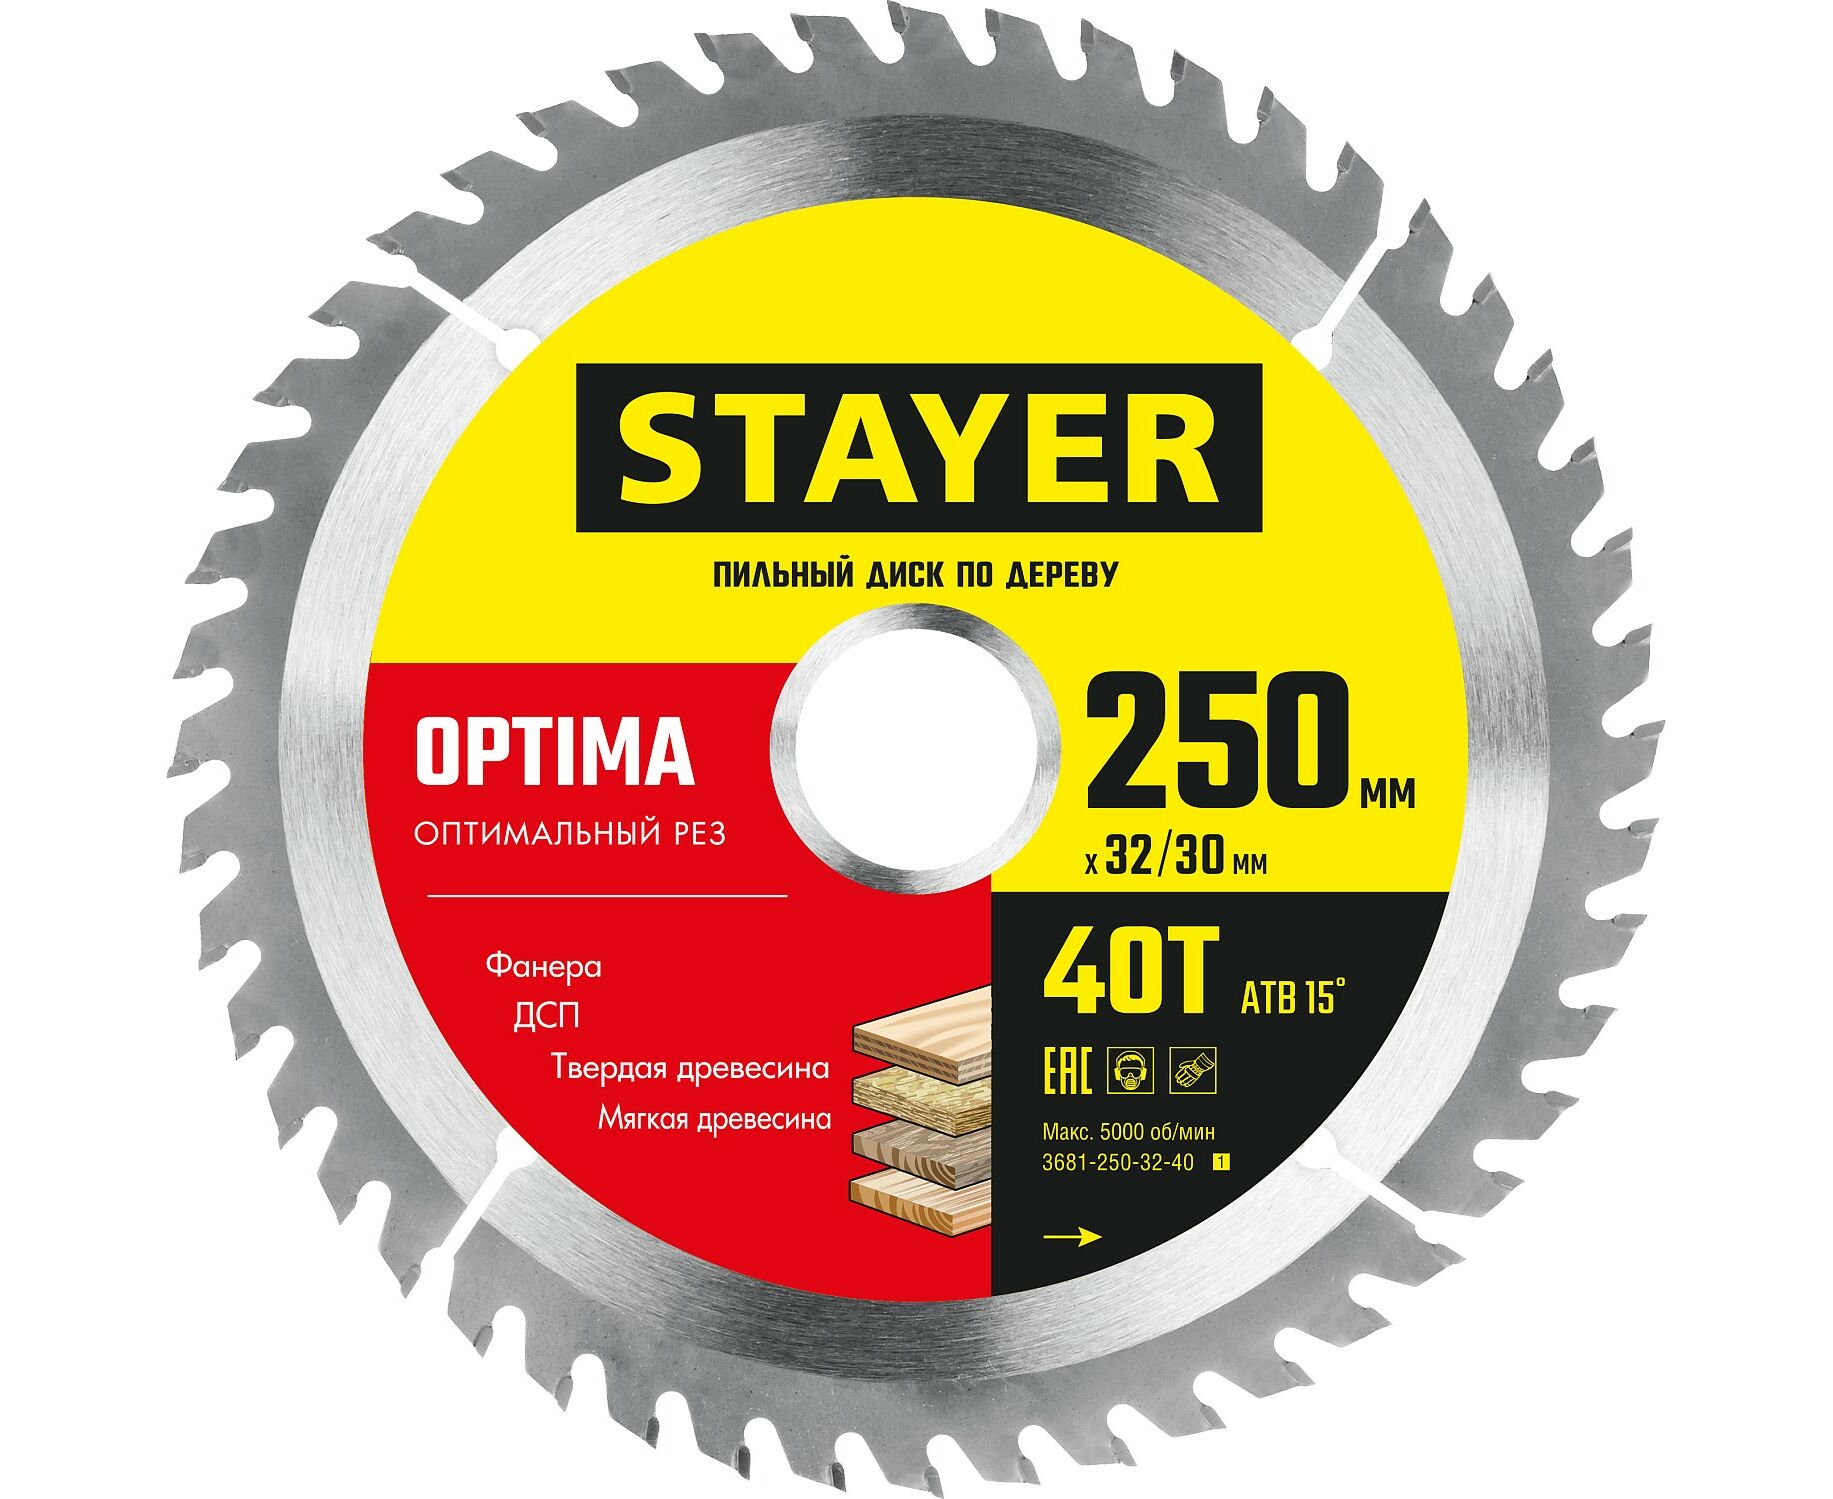 Пильный диск STAYER OPTIMA 250 x 32/30мм 40Т, оптимальный рез по дереву